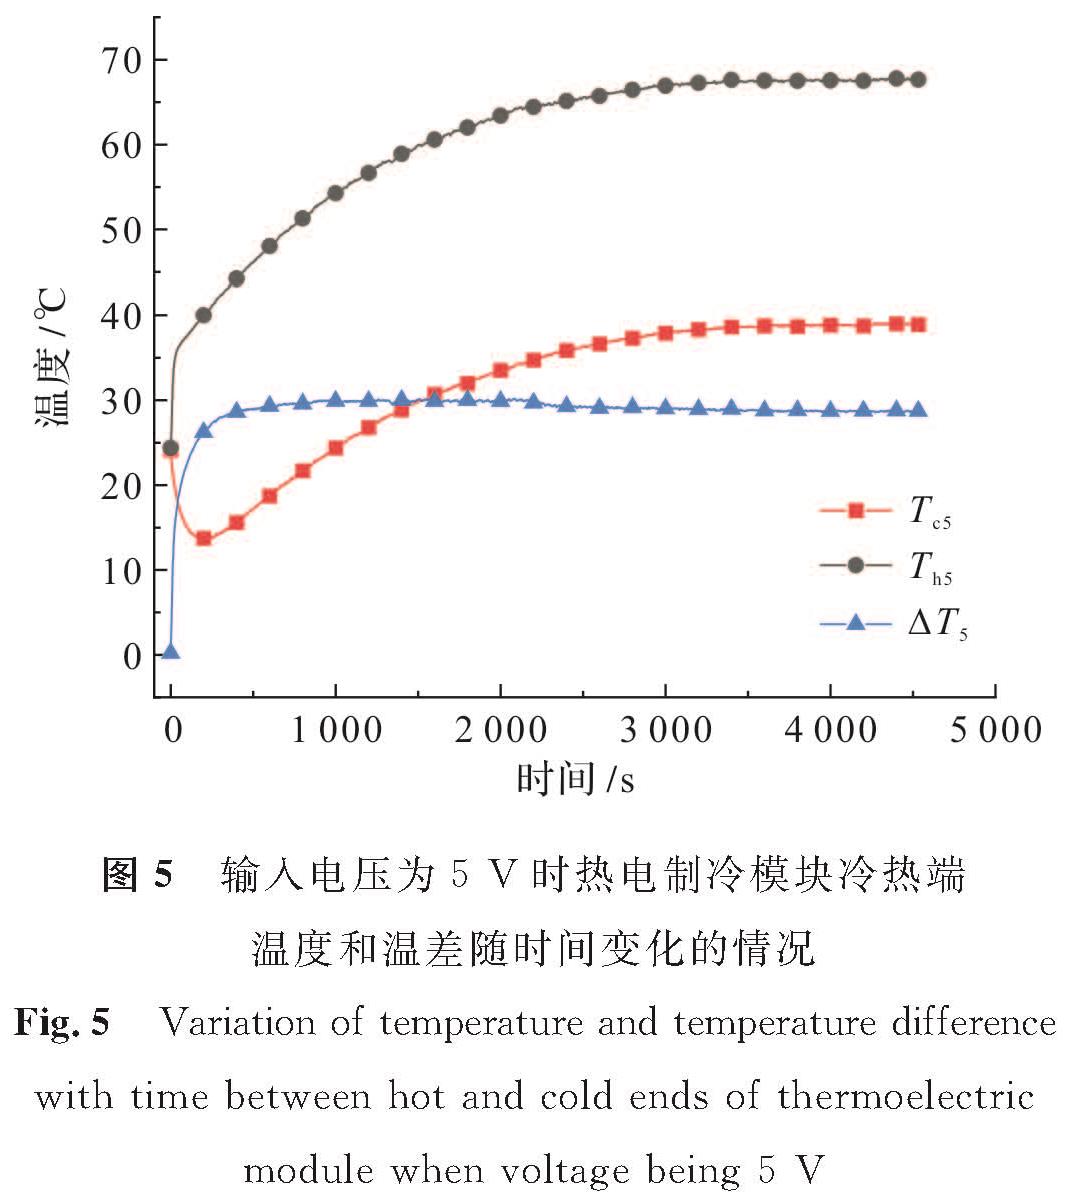 图5 输入电压为5 V时热电制冷模块冷热端温度和温差随时间变化的情况<br/>Fig.5 Variation of temperature and temperature difference with time between hot and cold ends of thermoelectric module when voltage being 5 V